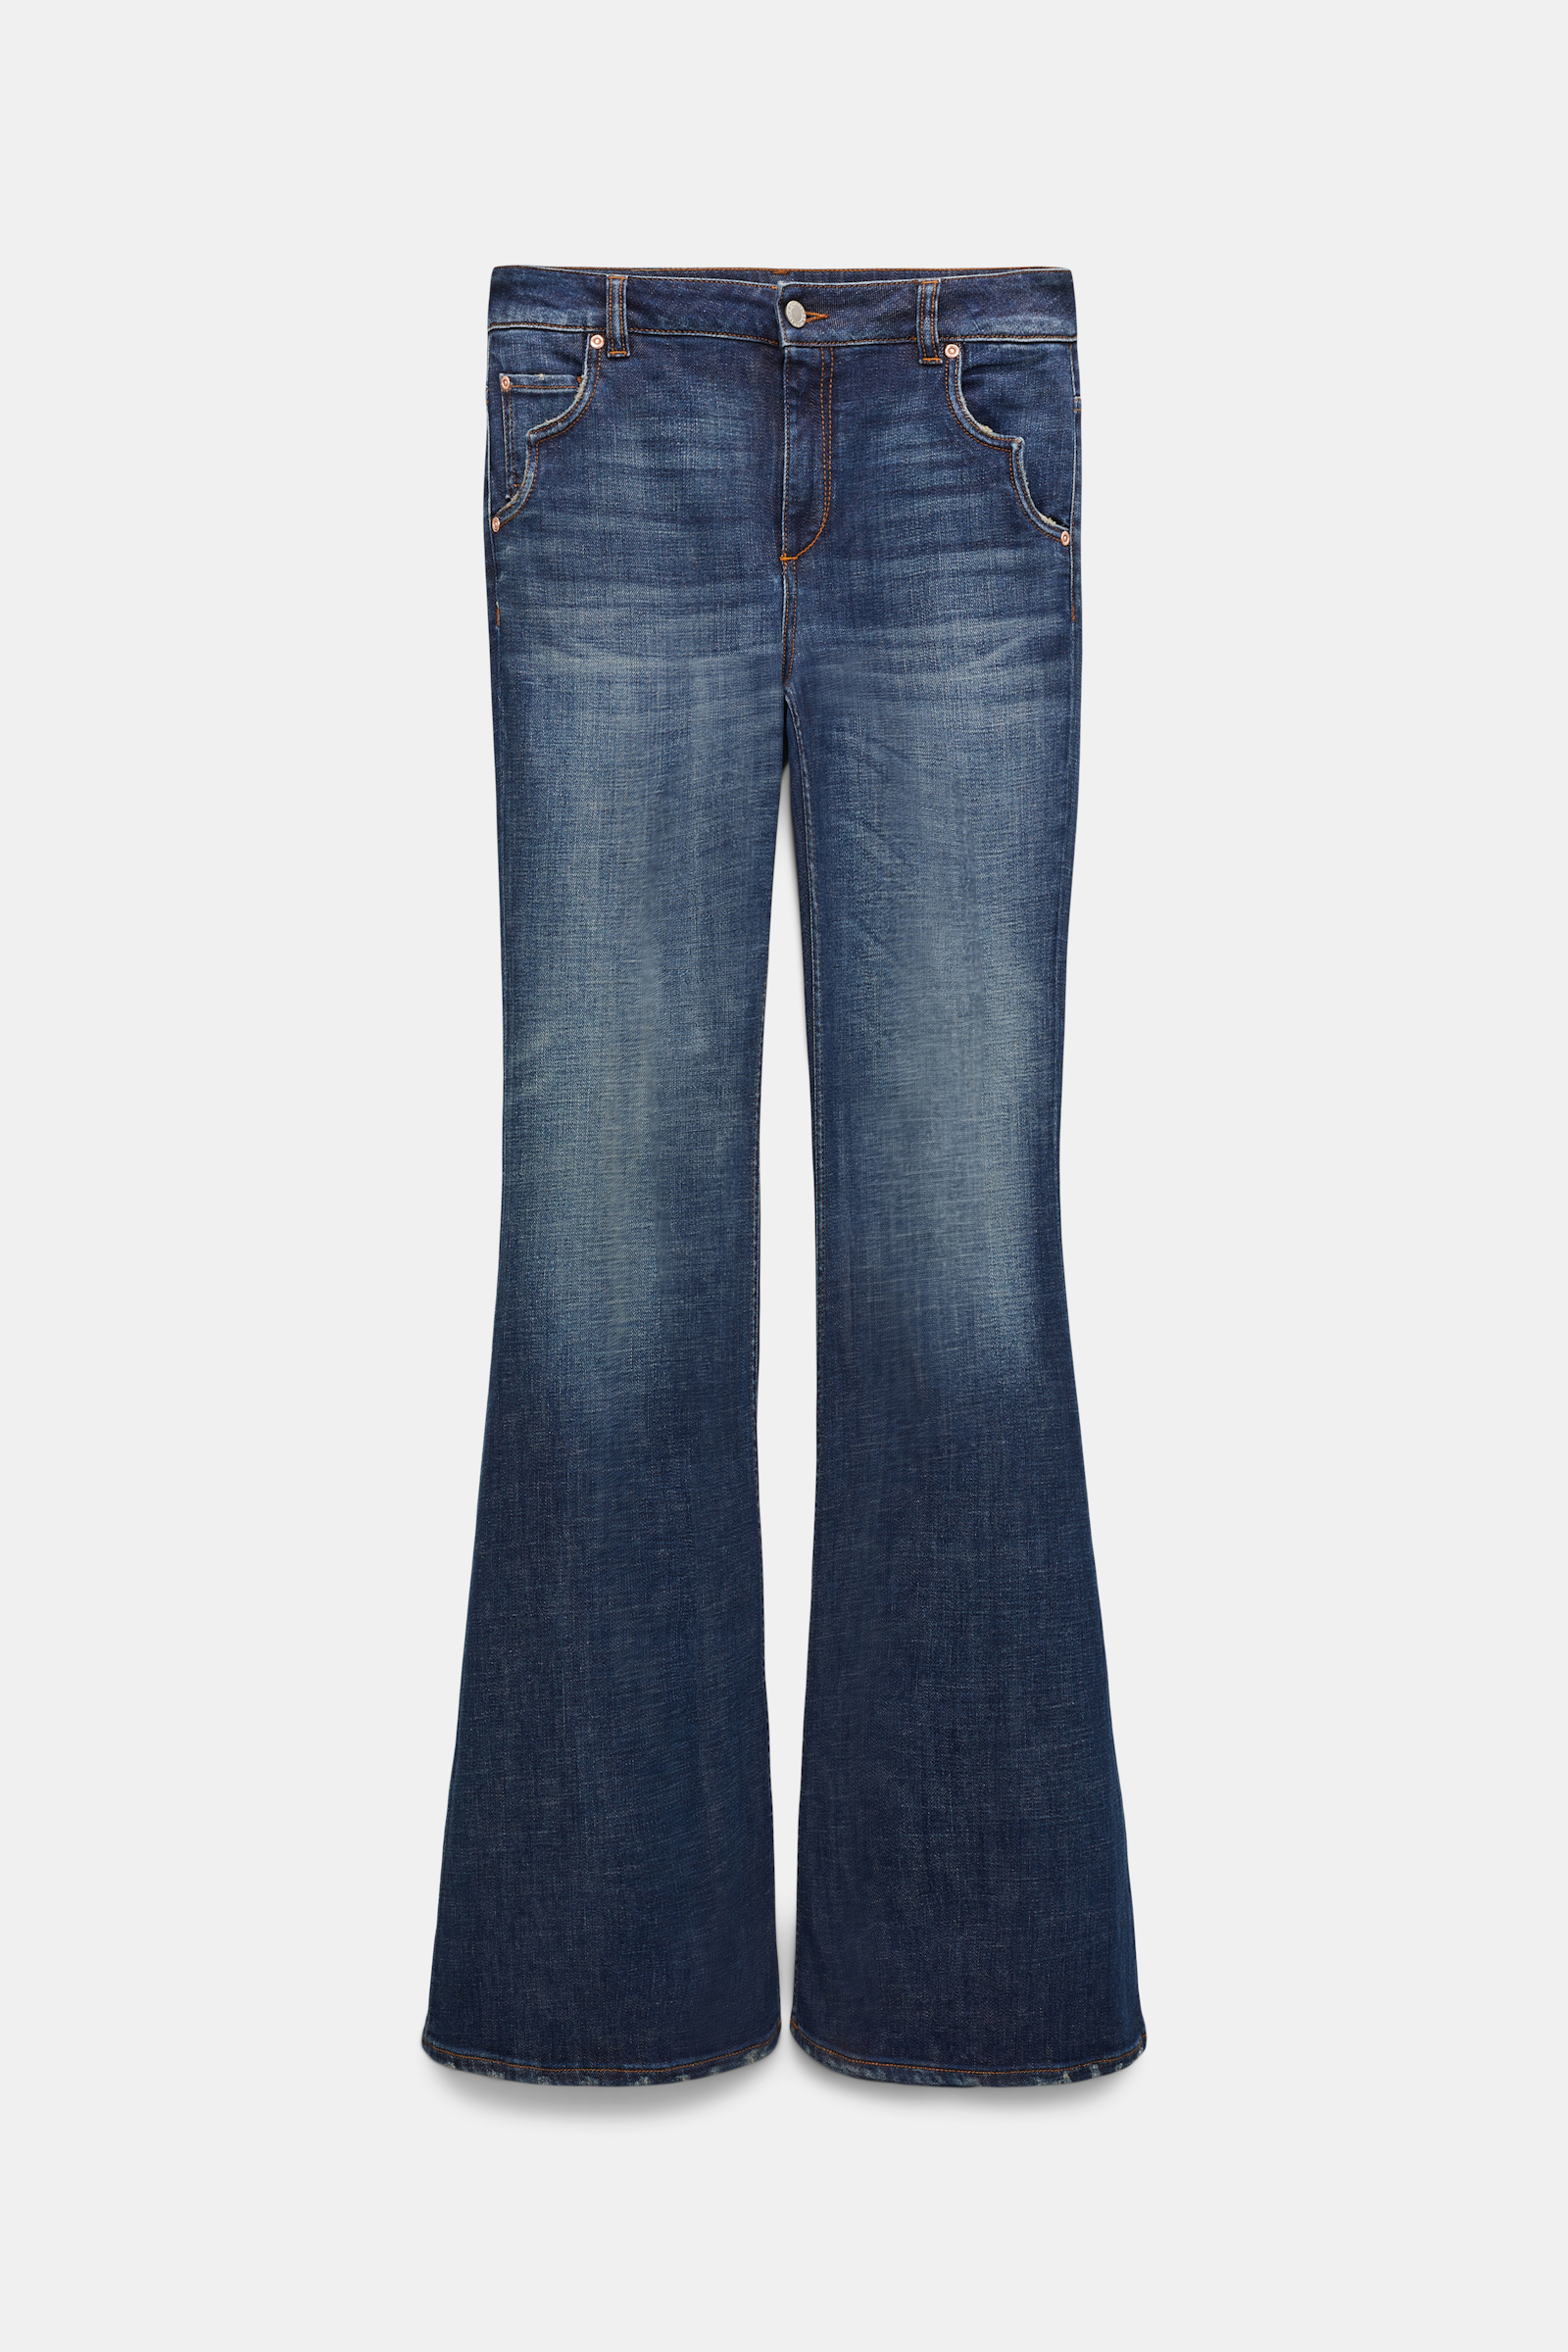 Dorothee Schumacher Long Flared Jeans mit Westerndetails denim blue